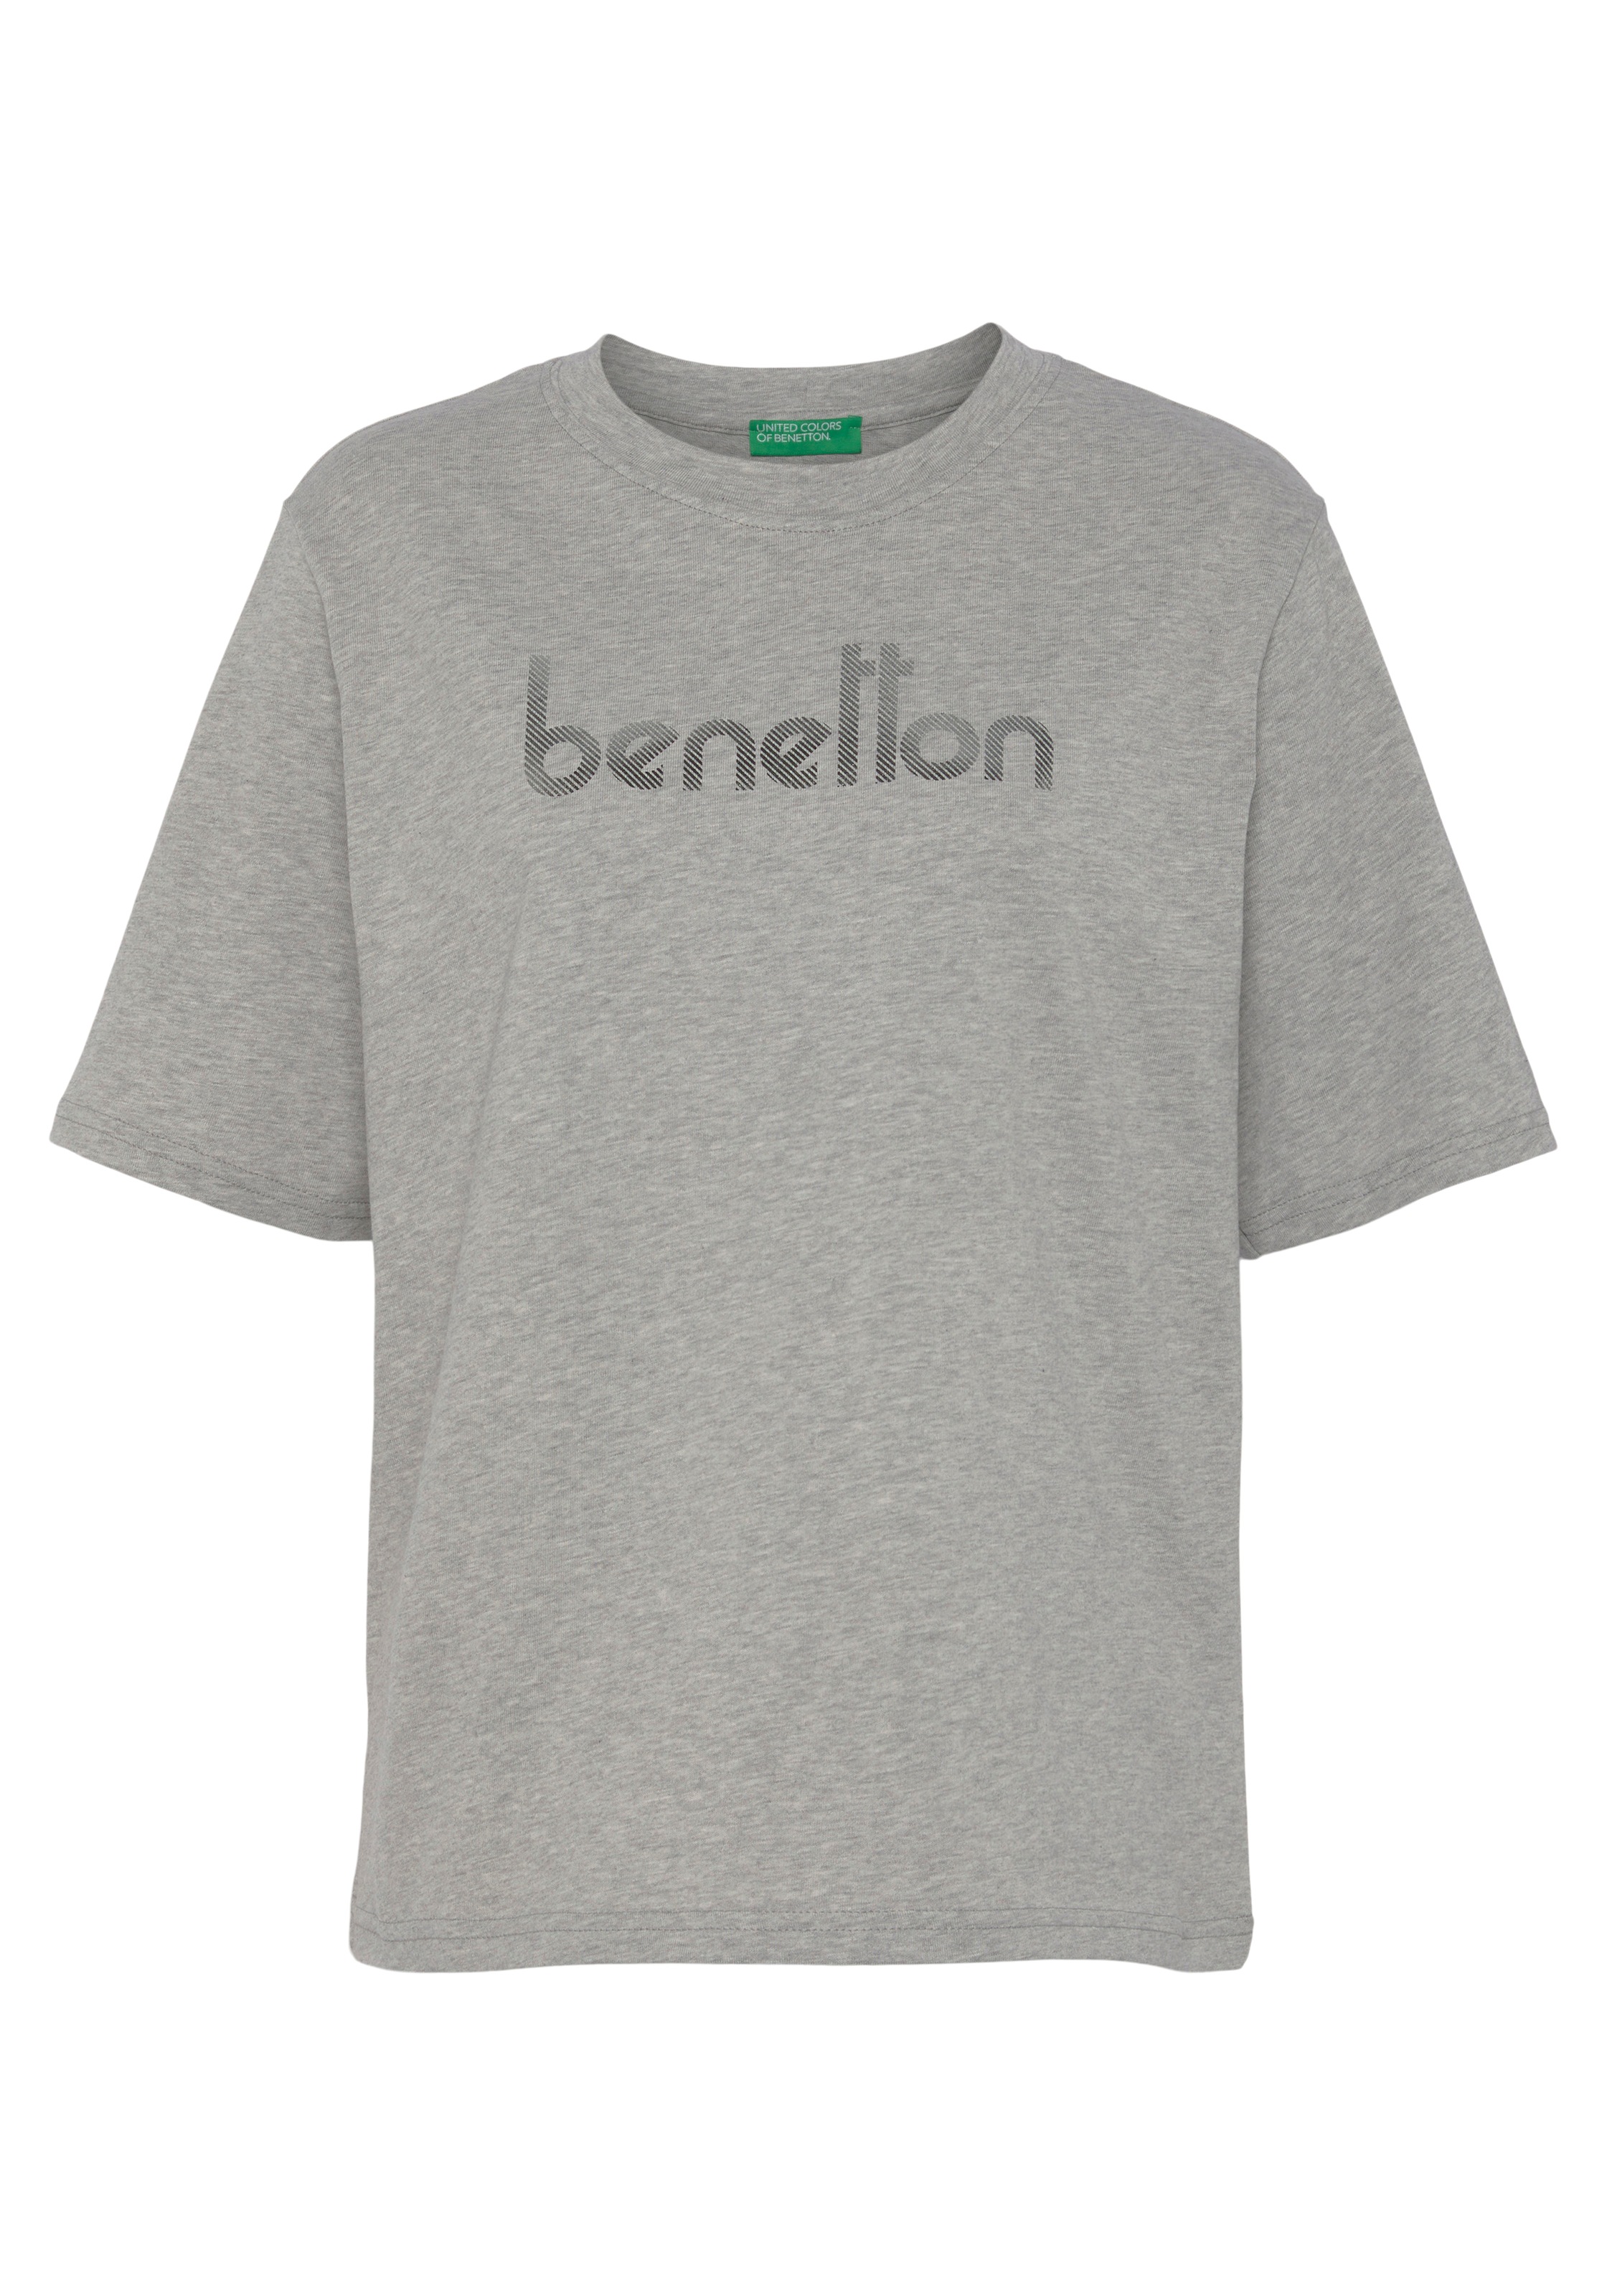 United Colors of Benetton T-Shirt, mit Logodruck auf der Brust shoppen